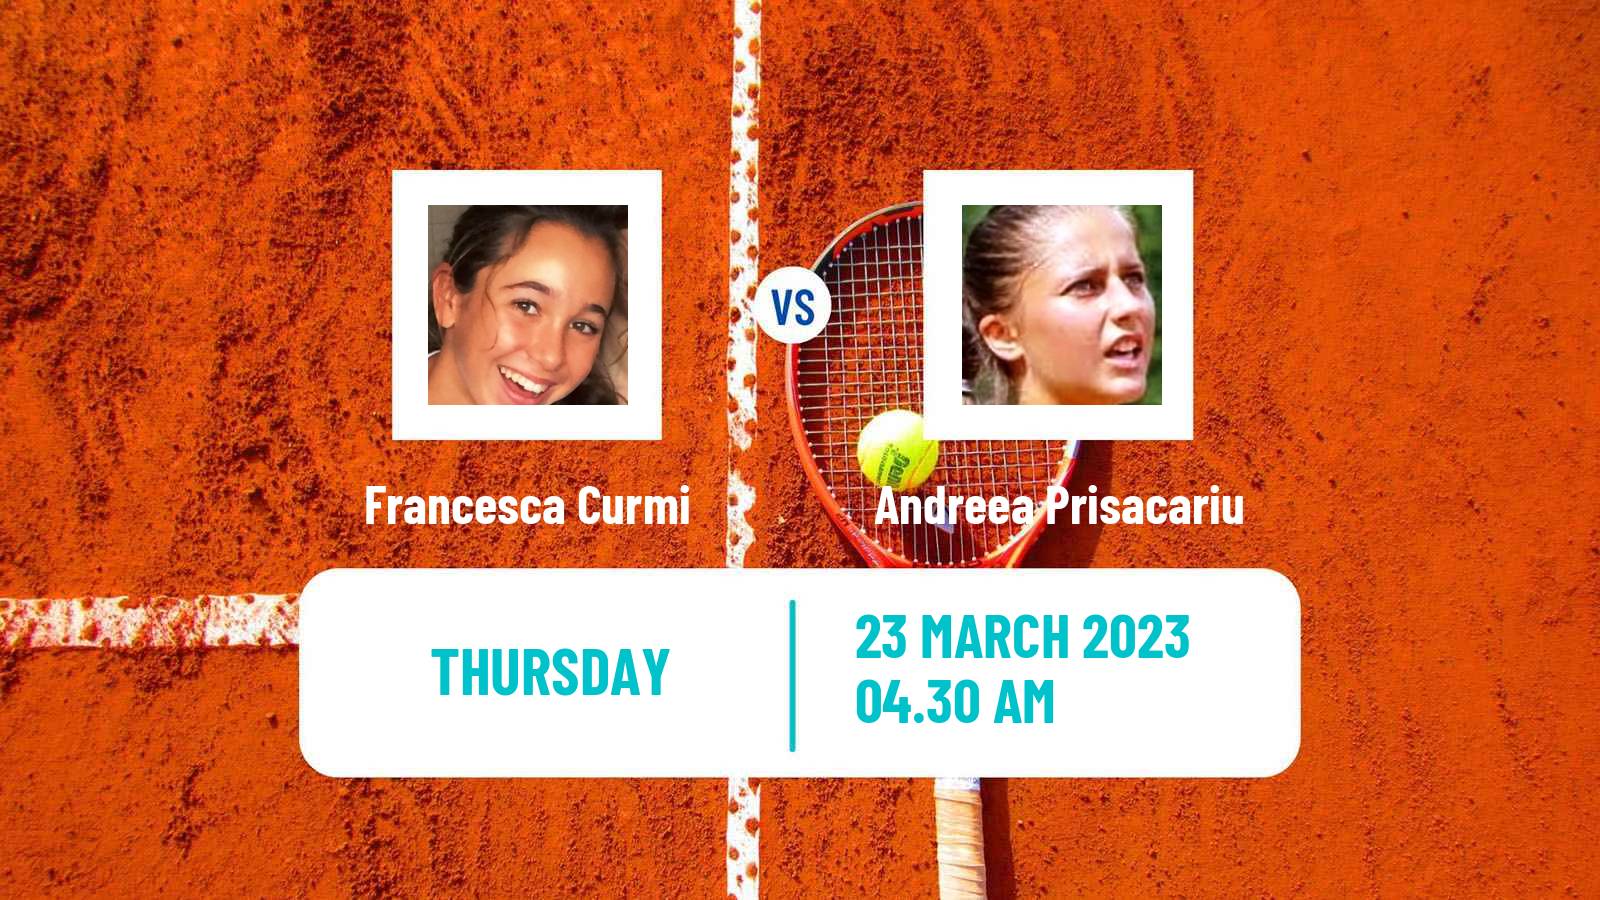 Tennis ITF Tournaments Francesca Curmi - Andreea Prisacariu